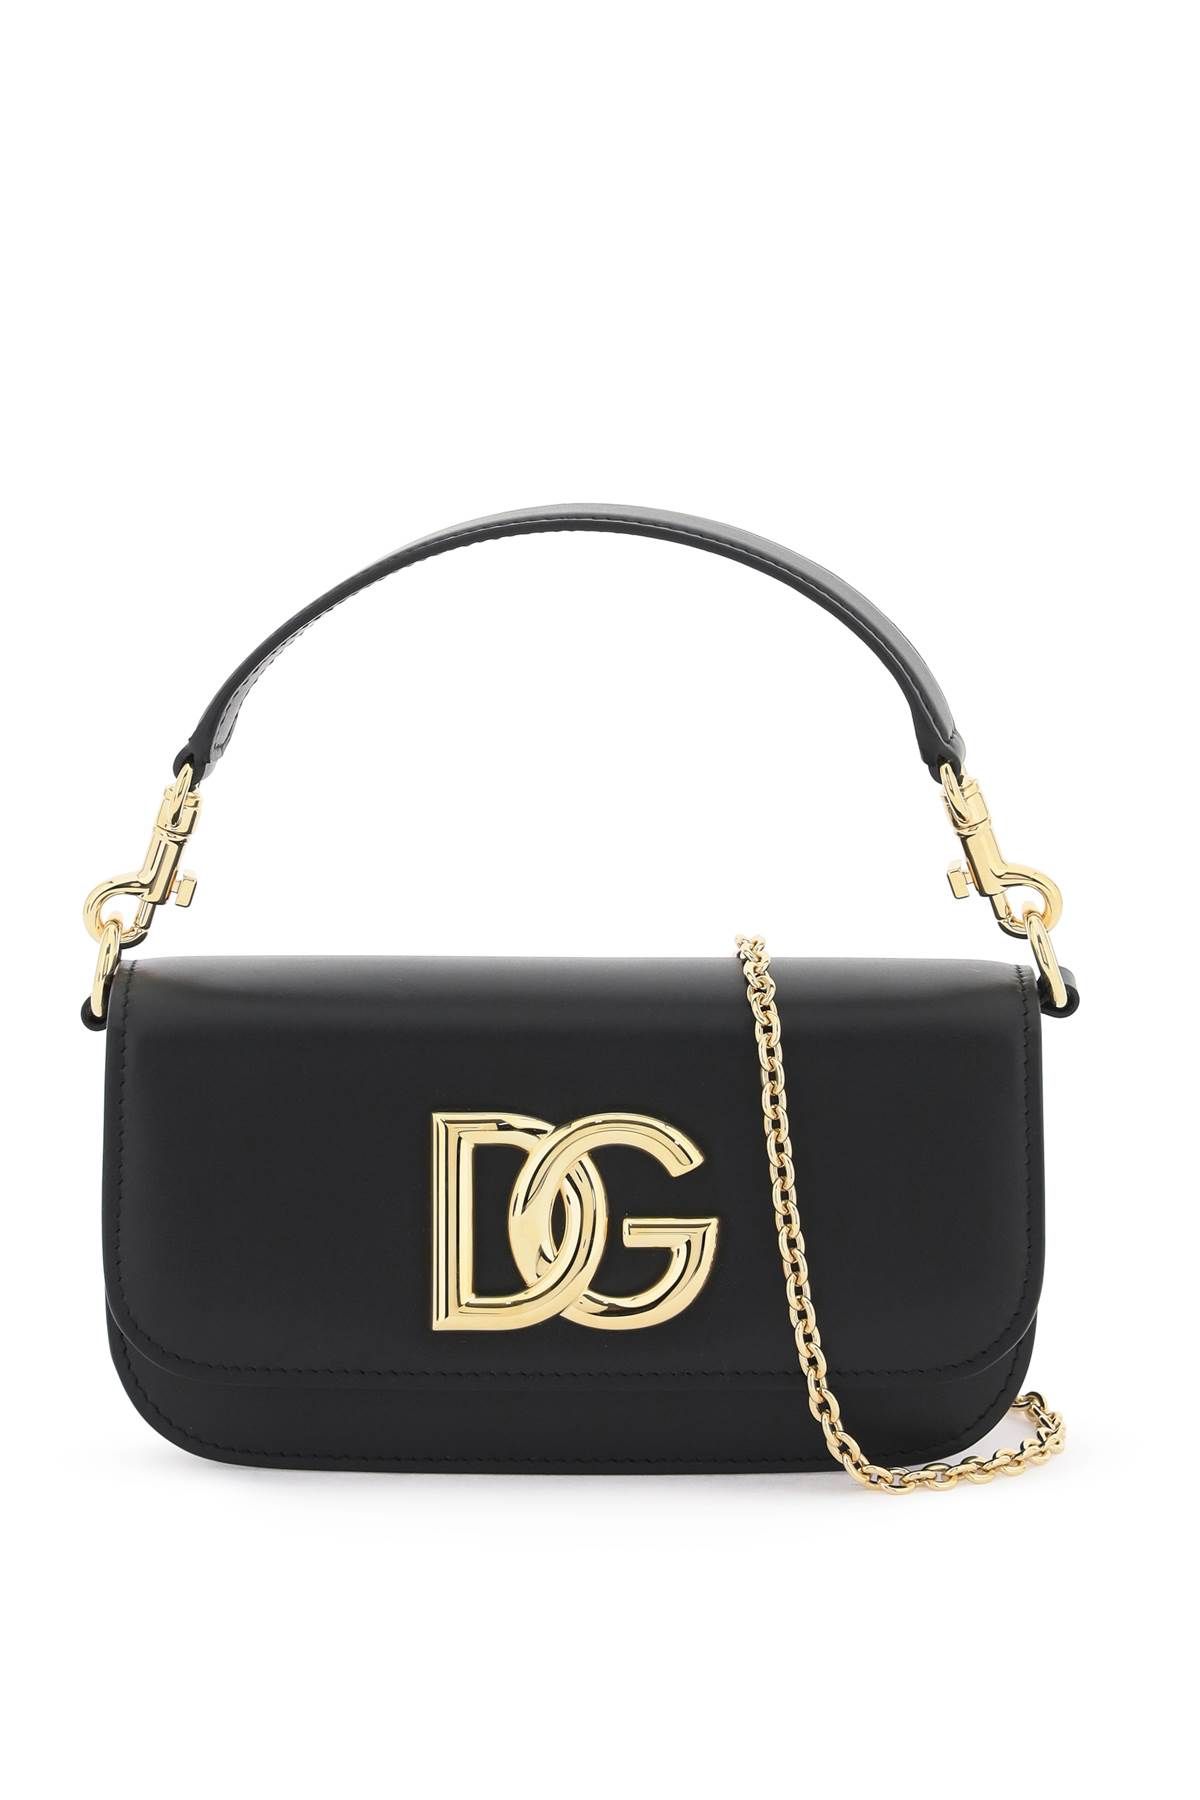 Dolce & Gabbana DOLCE & GABBANA smooth leather 3.5 handbag